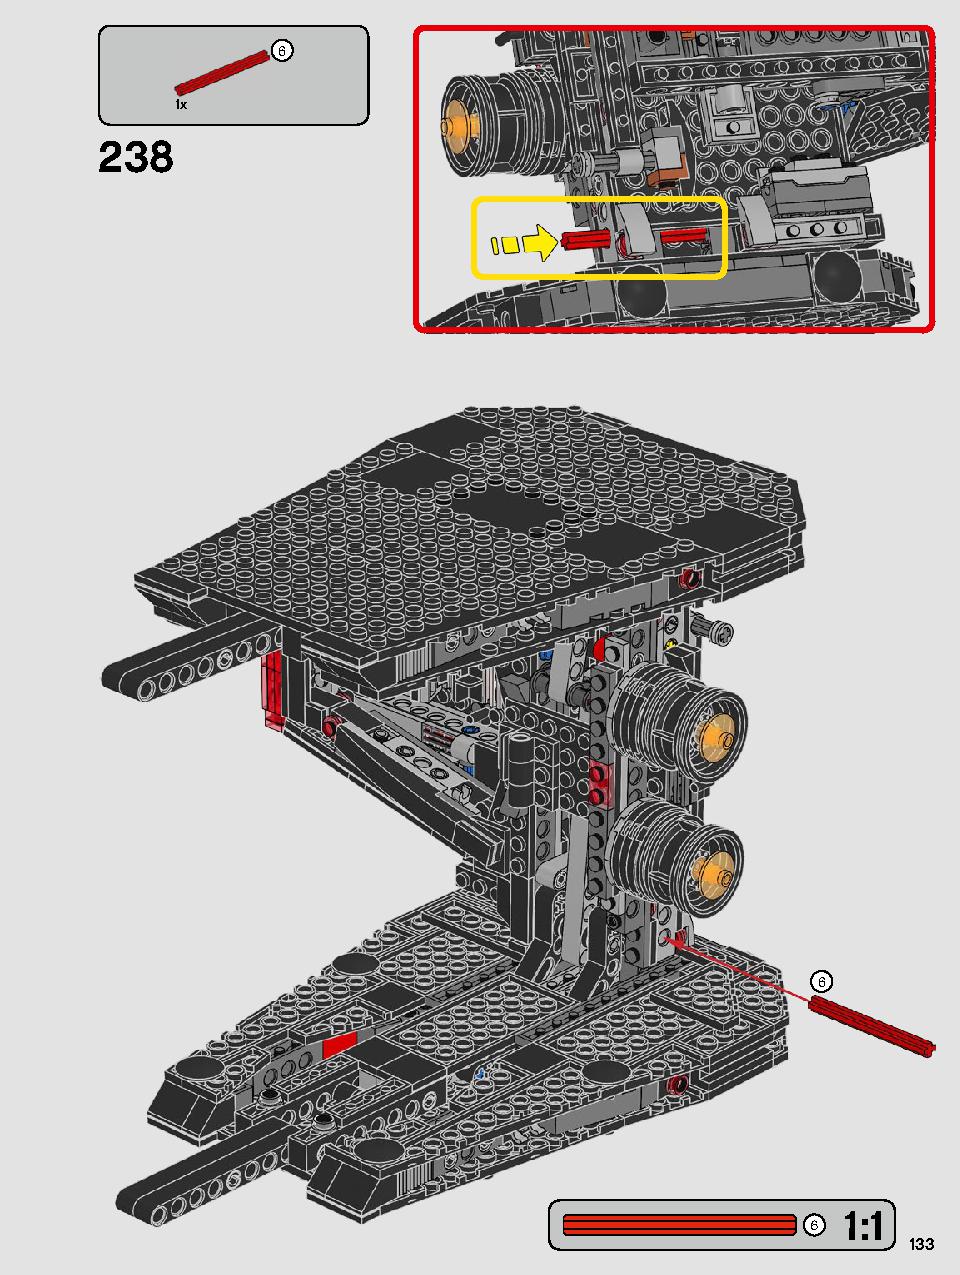 스타워즈 카일로 렌의 셔틀™ 75256 레고 세트 제품정보 레고 조립설명서 133 page